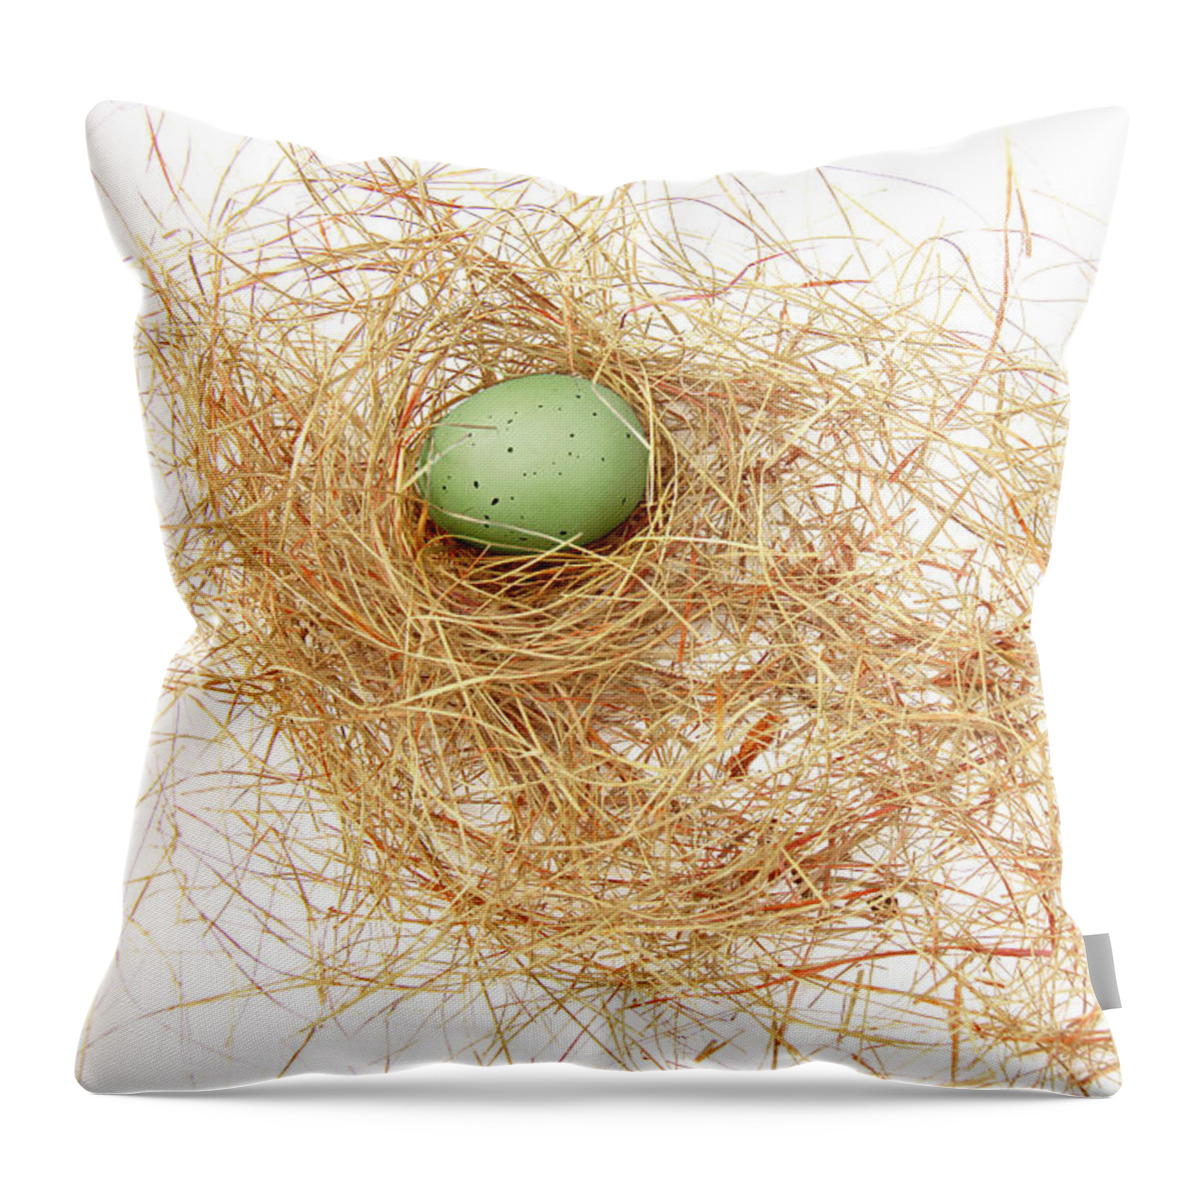 Bird Nest Throw Pillow featuring the photograph Green Egg in a Bird Nest by Jennie Marie Schell